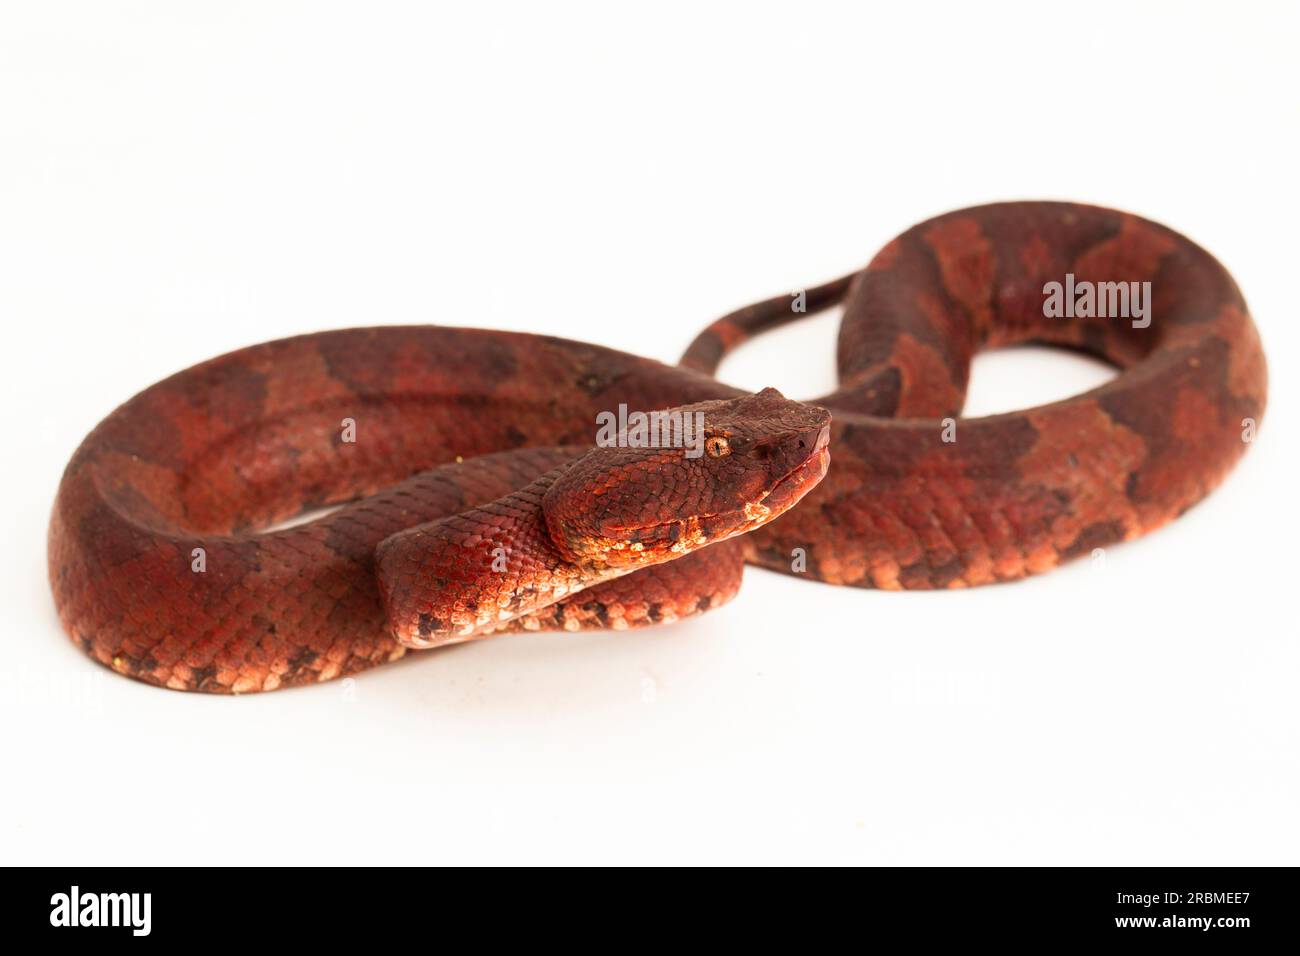 Flat-nosed pitviper snake Craspedocephalus Trimeresurus puniceus isolated on white background Stock Photo